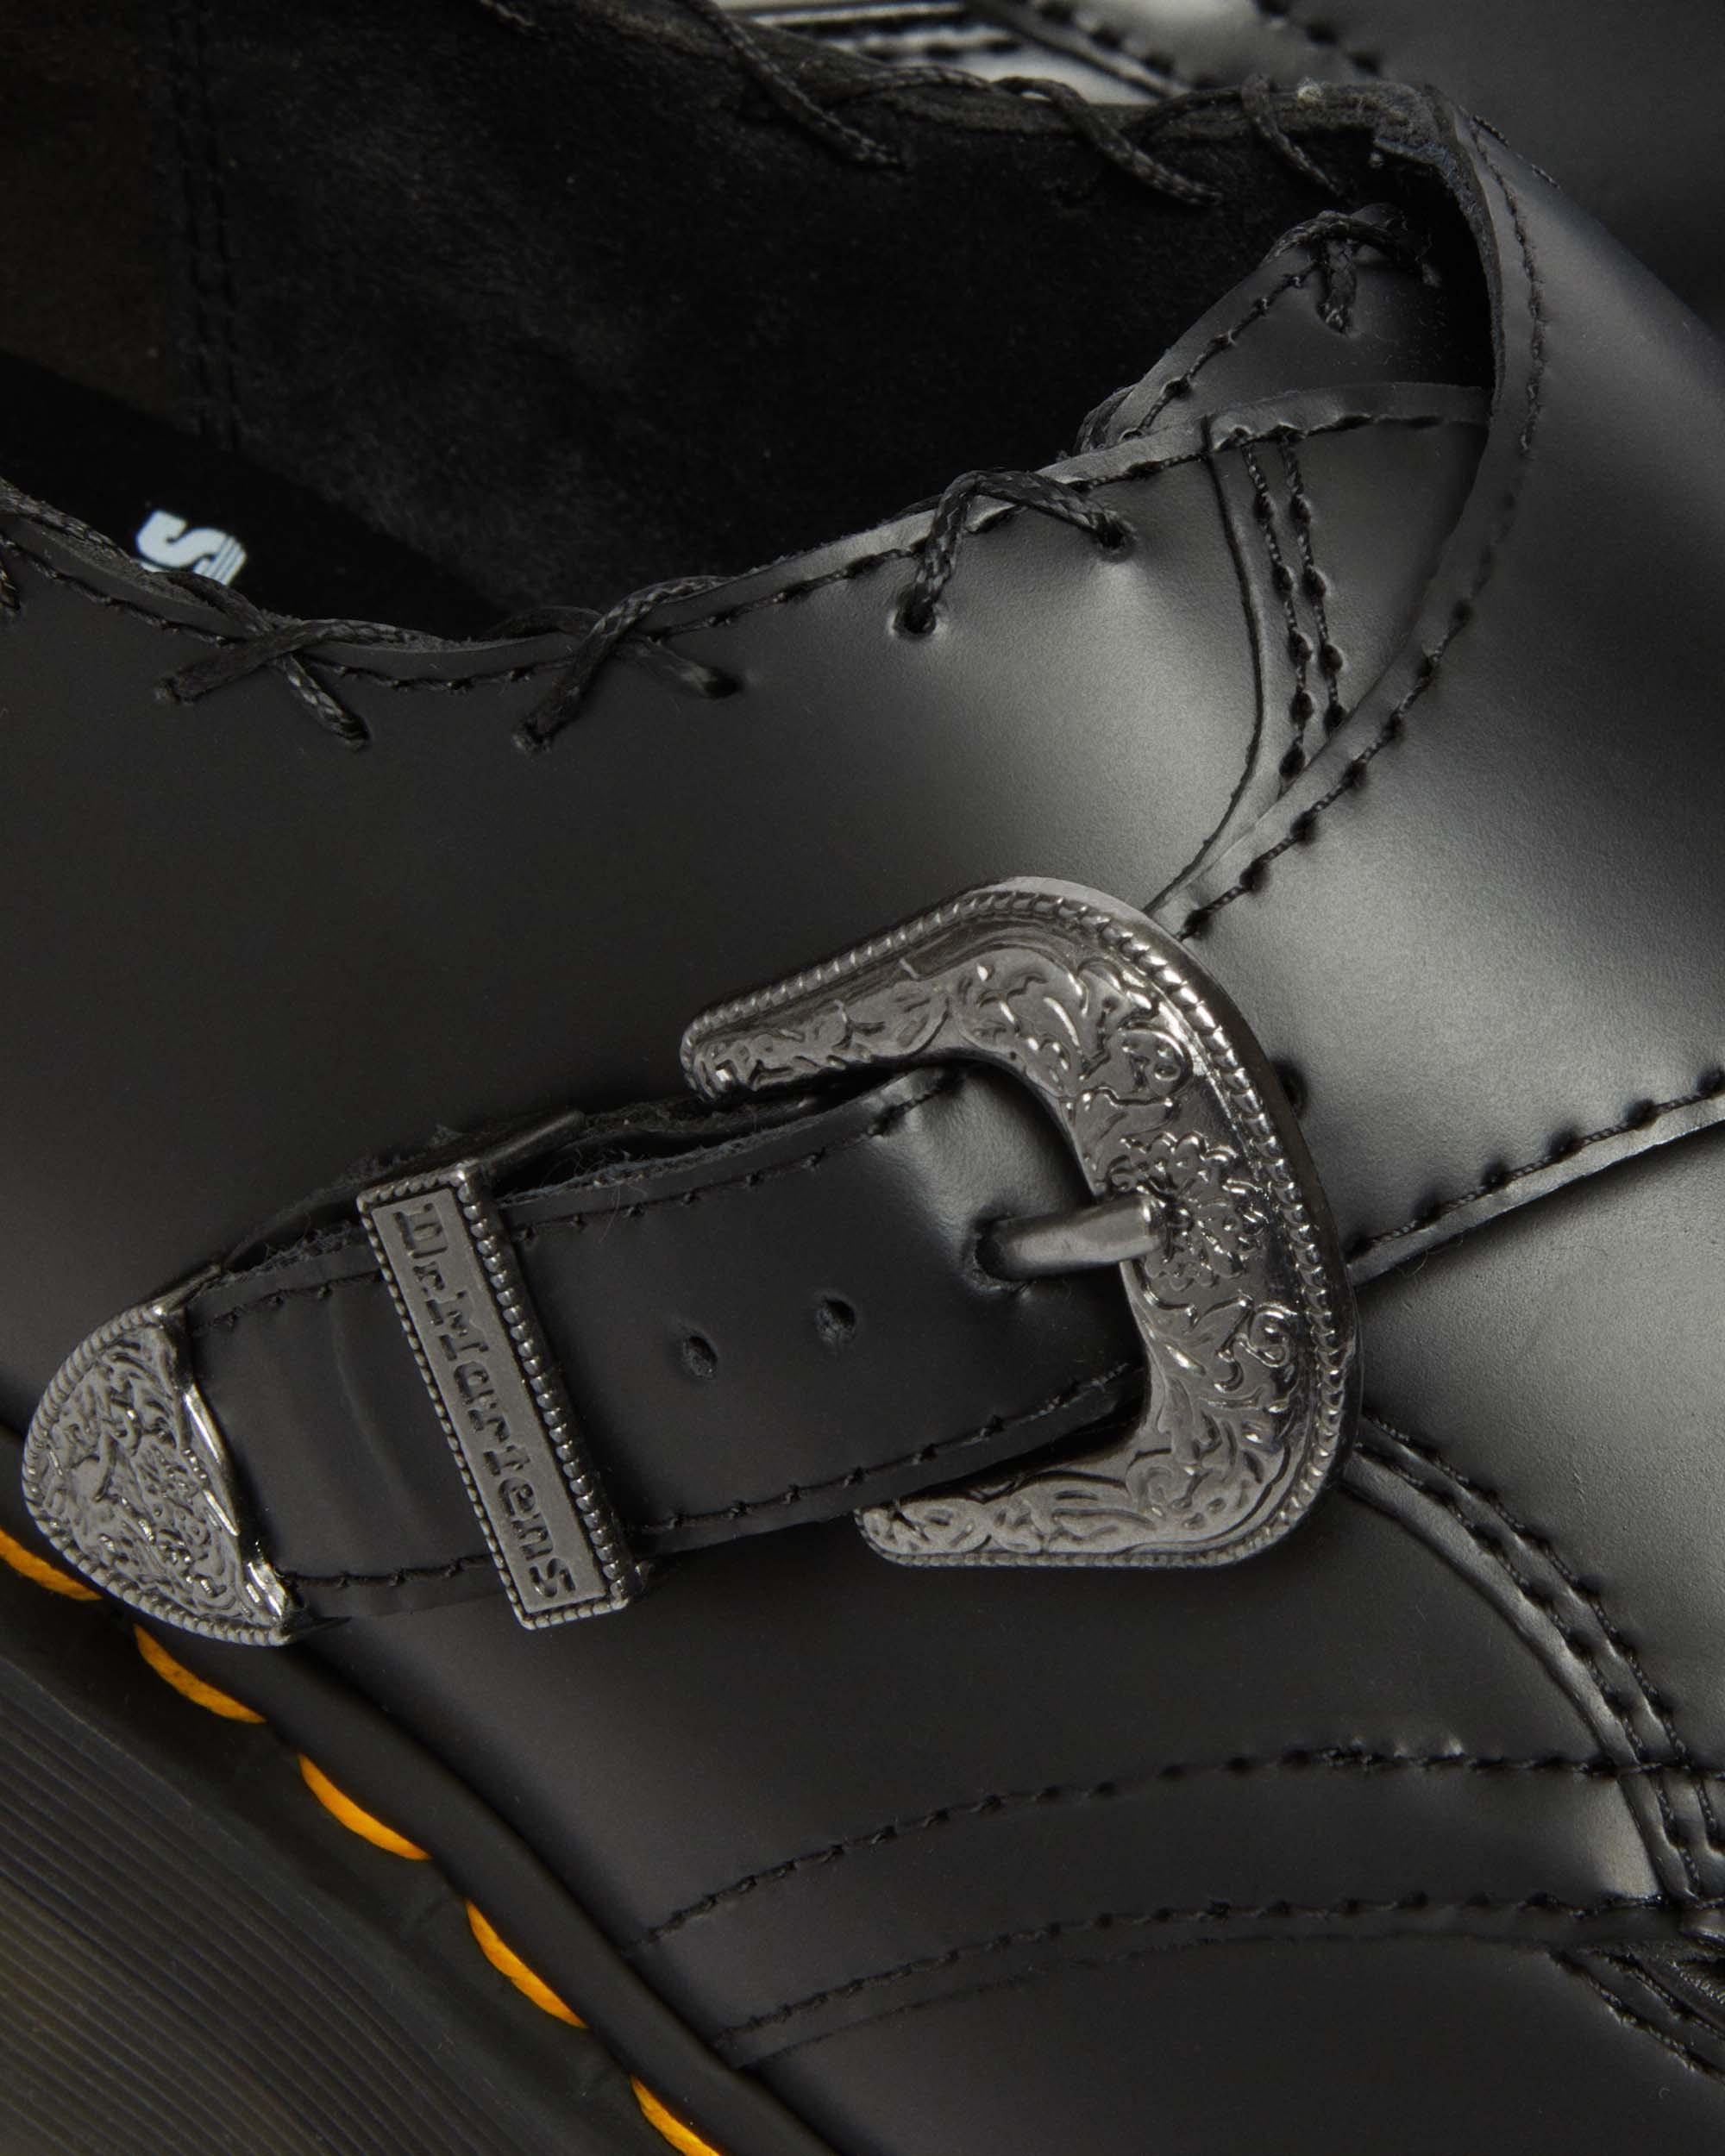 Zapatos con plataforma Creepers Ramsey de piel Smooth tejida in Negro